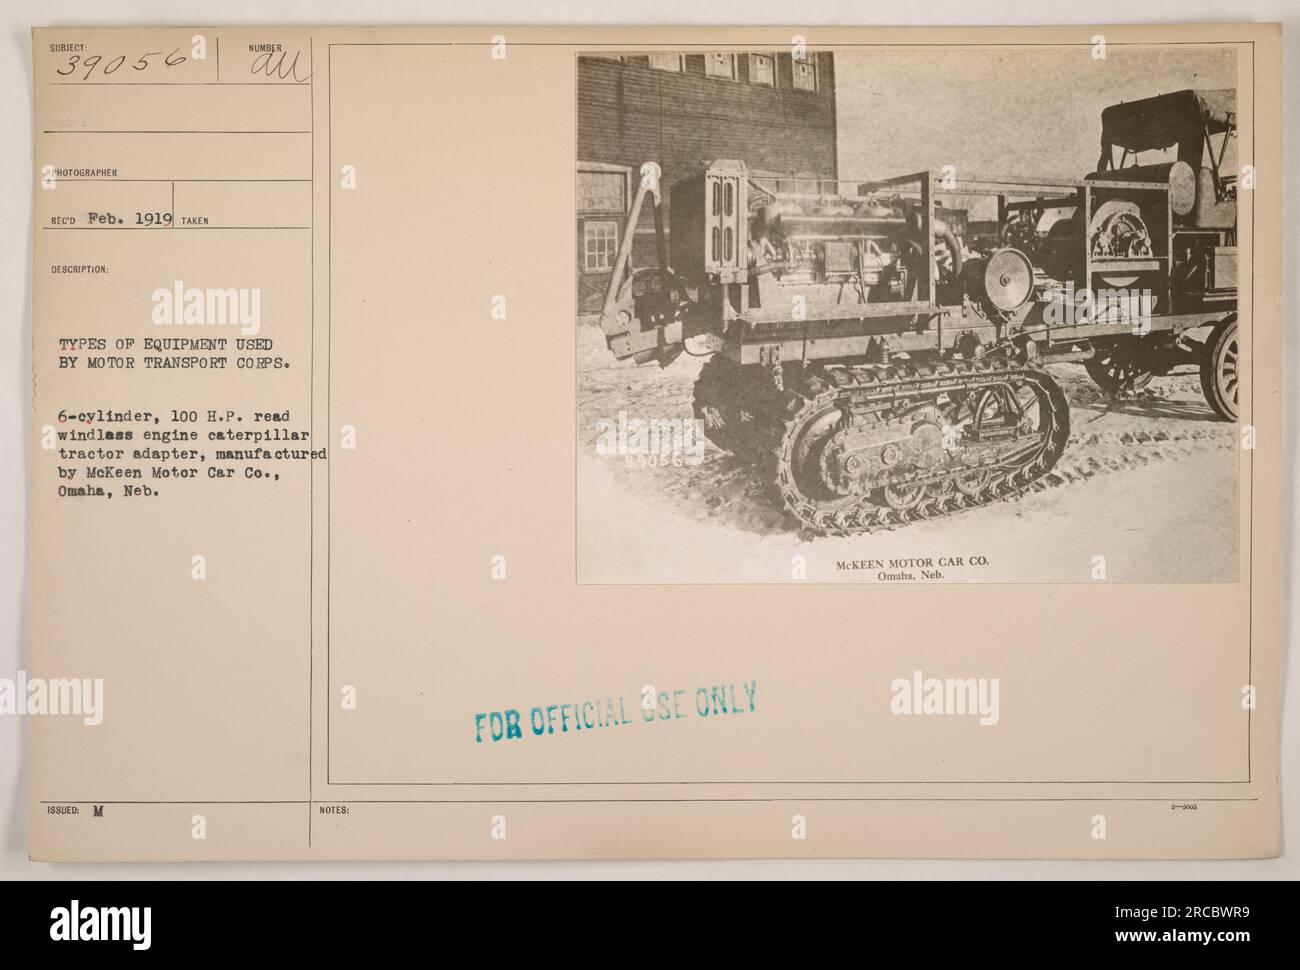 Questa fotografia, scattata nel febbraio 1919, mostra un veicolo Motor Transport Corps equipaggiato con un 6 cilindri, 100 H.P. Motore Red Winglass e adattatore trattore caterpillar. L'adattatore è stato prodotto dalla McKeen Motor Car Co. Di Omaha, Nebraska. Queste informazioni sono destinate esclusivamente all'uso ufficiale. Foto Stock